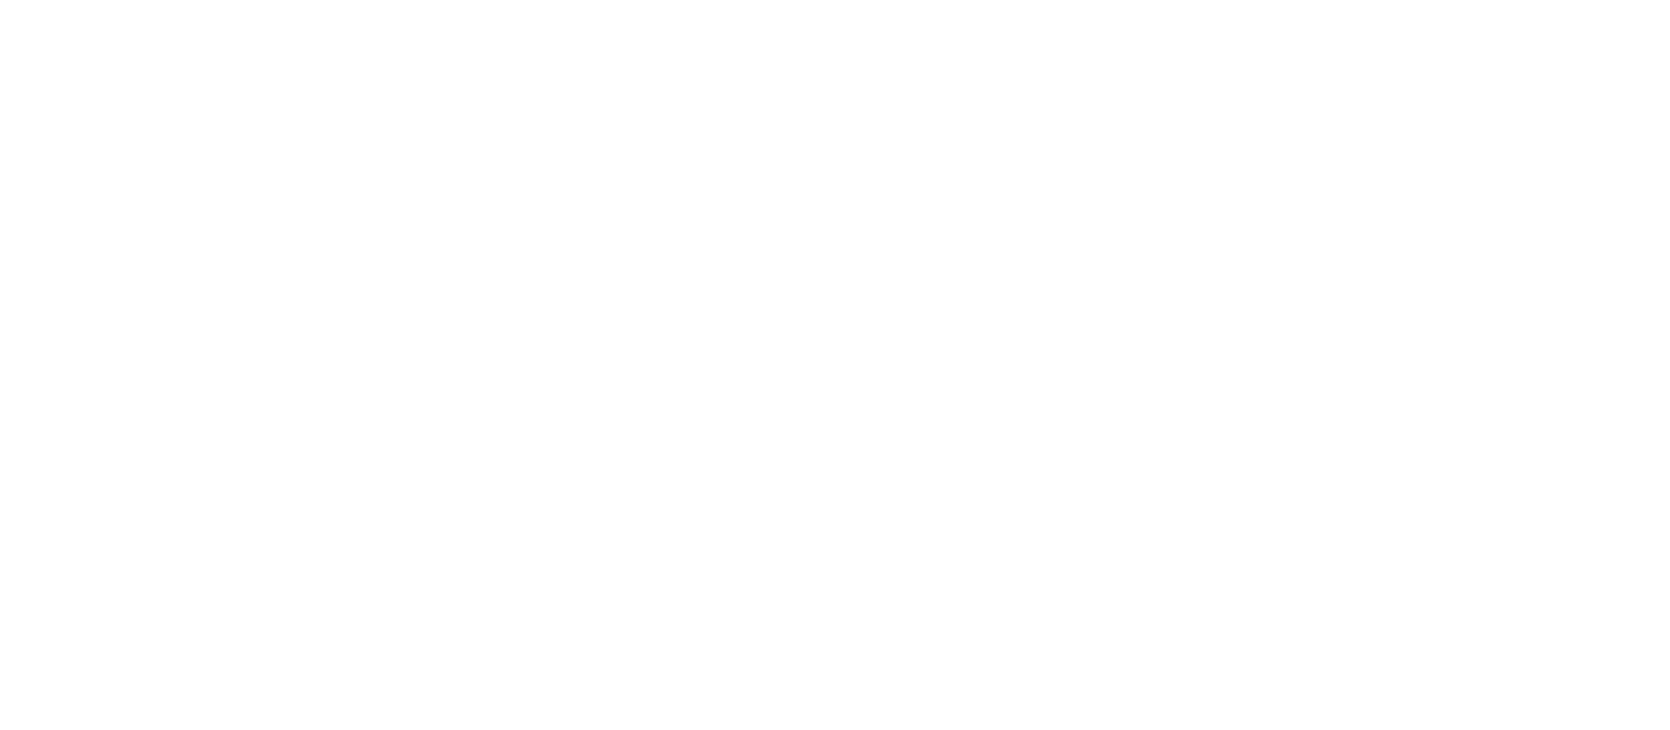 「おいしい！」を再発見 CAFE TAKASAKI JIMAN 高崎オーパ 7F 「CAFE 高崎じまん」